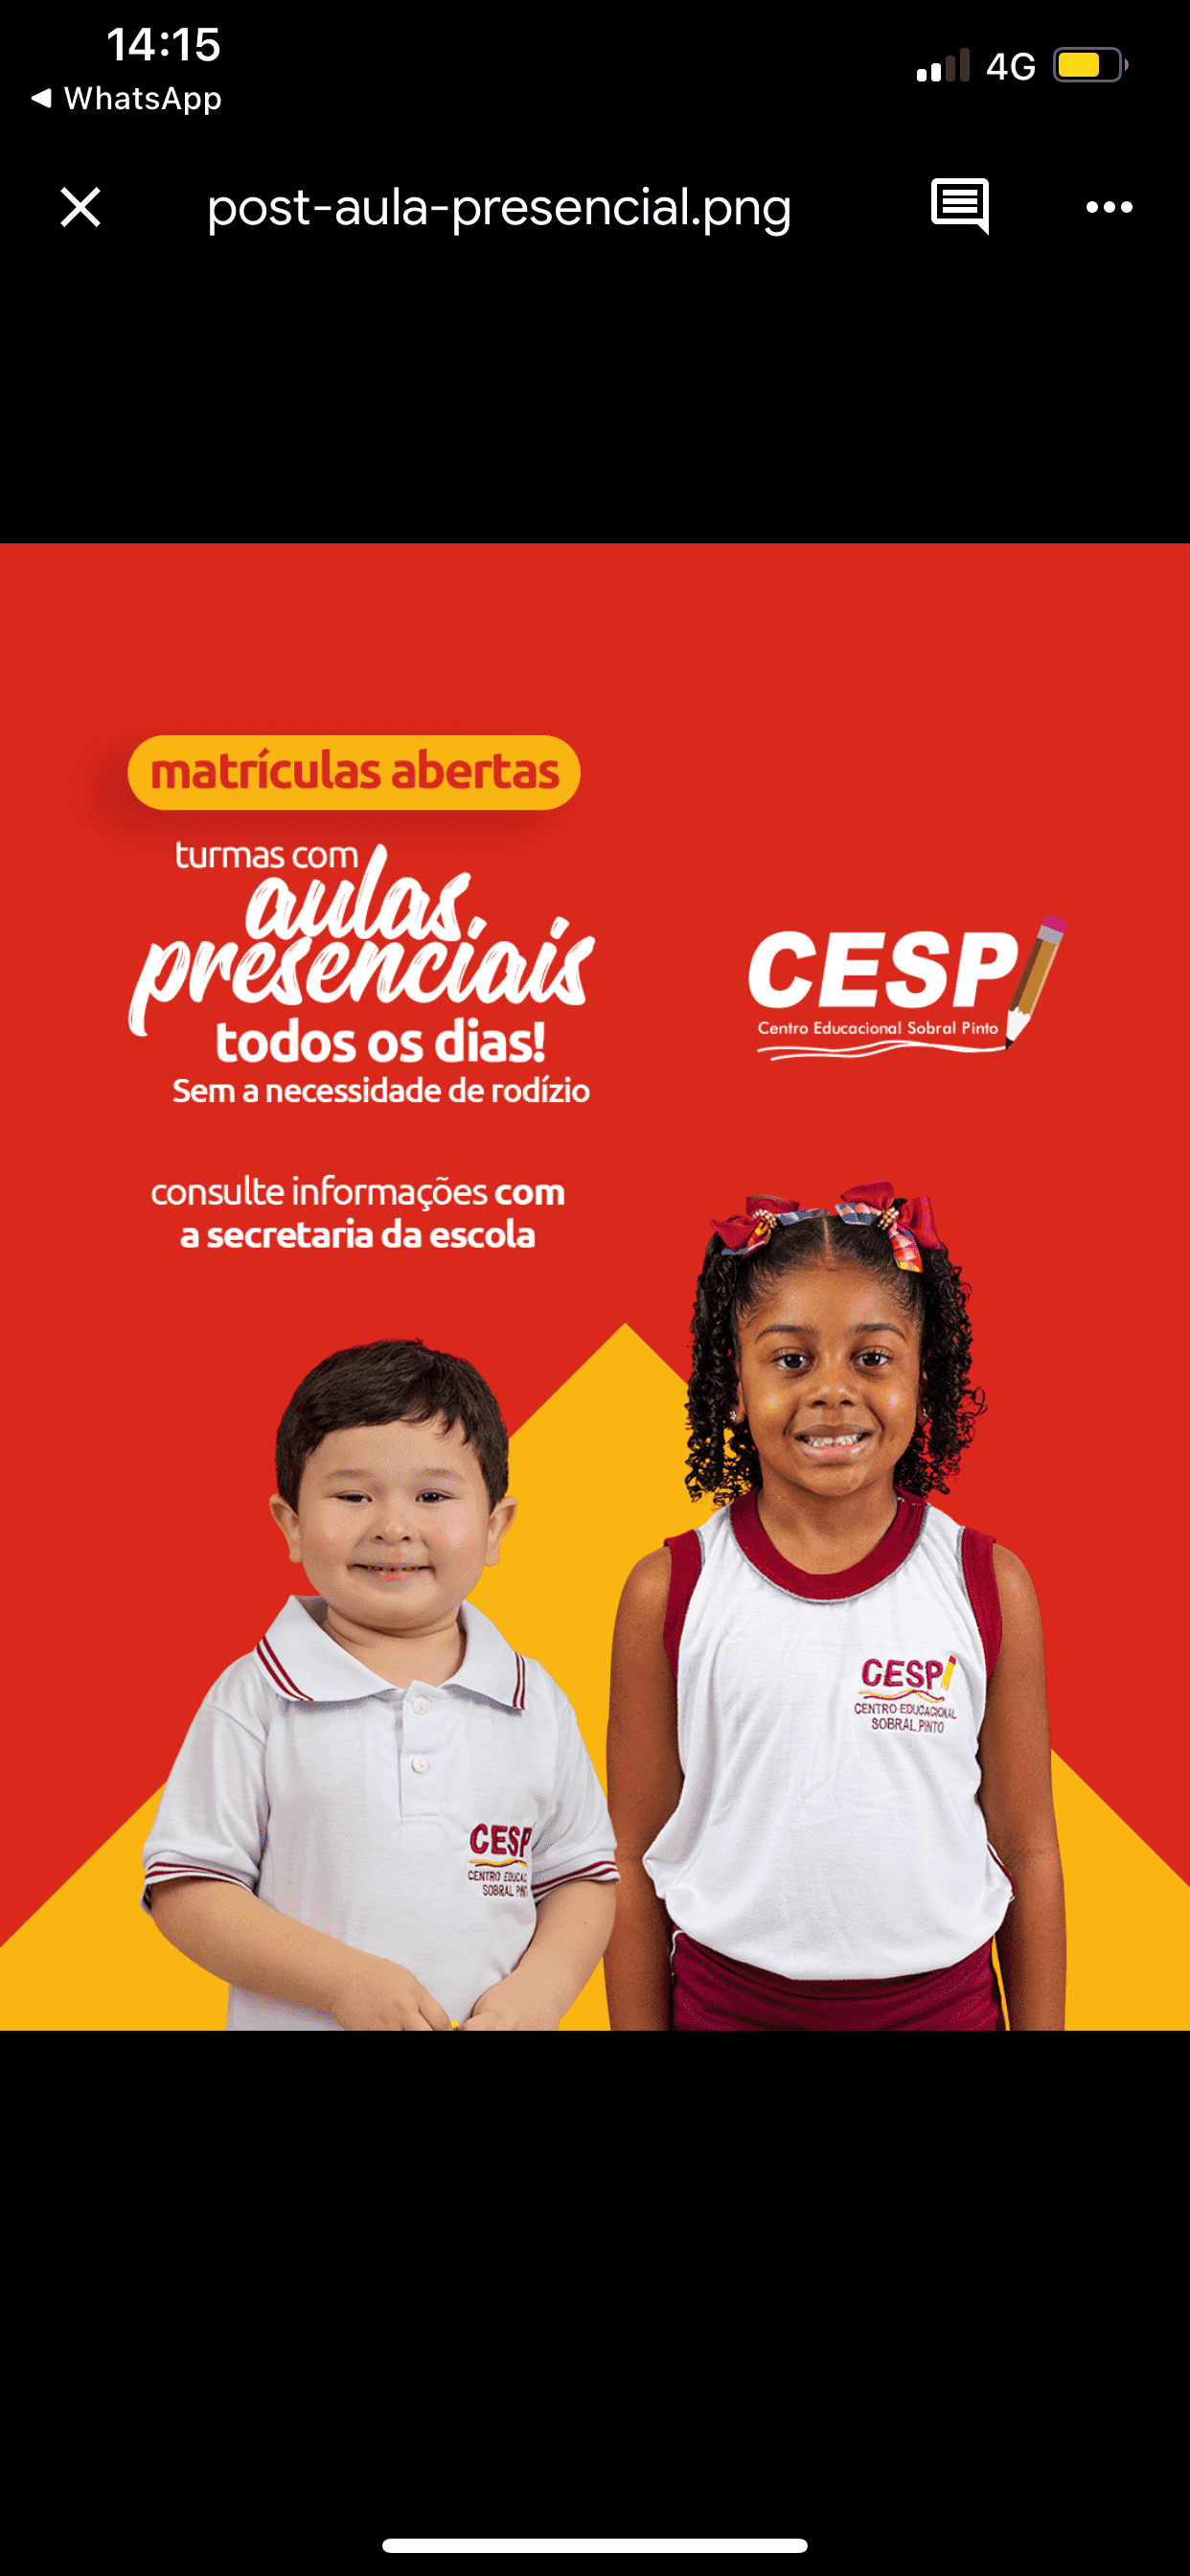  Cesp - Centro Educacional Sobral Pinto 